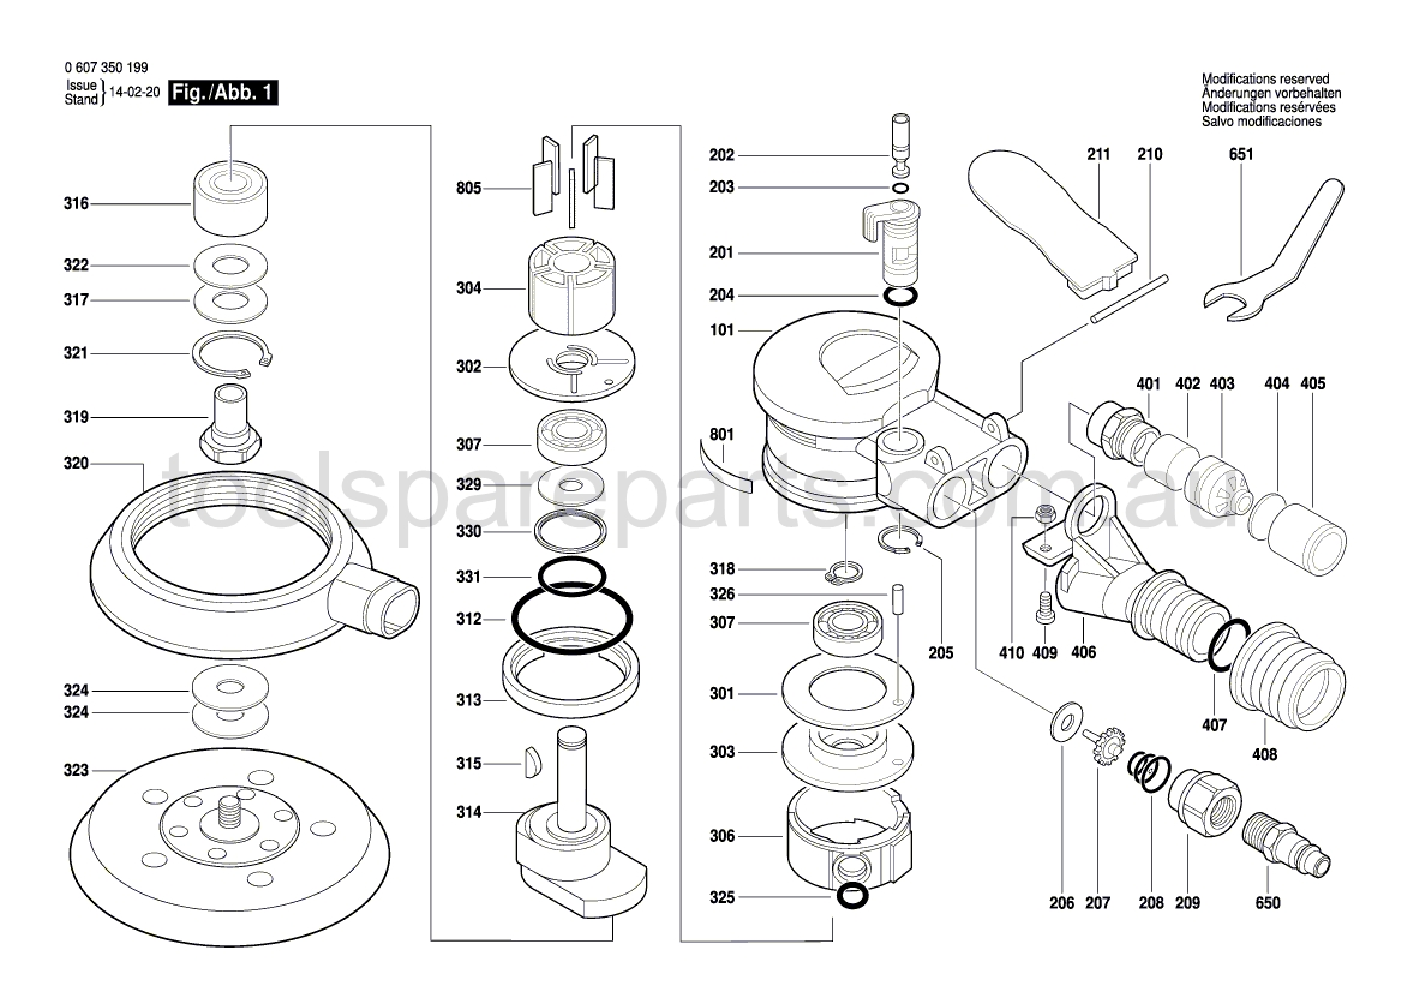 Bosch DEX 150-5 0607350199  Diagram 1